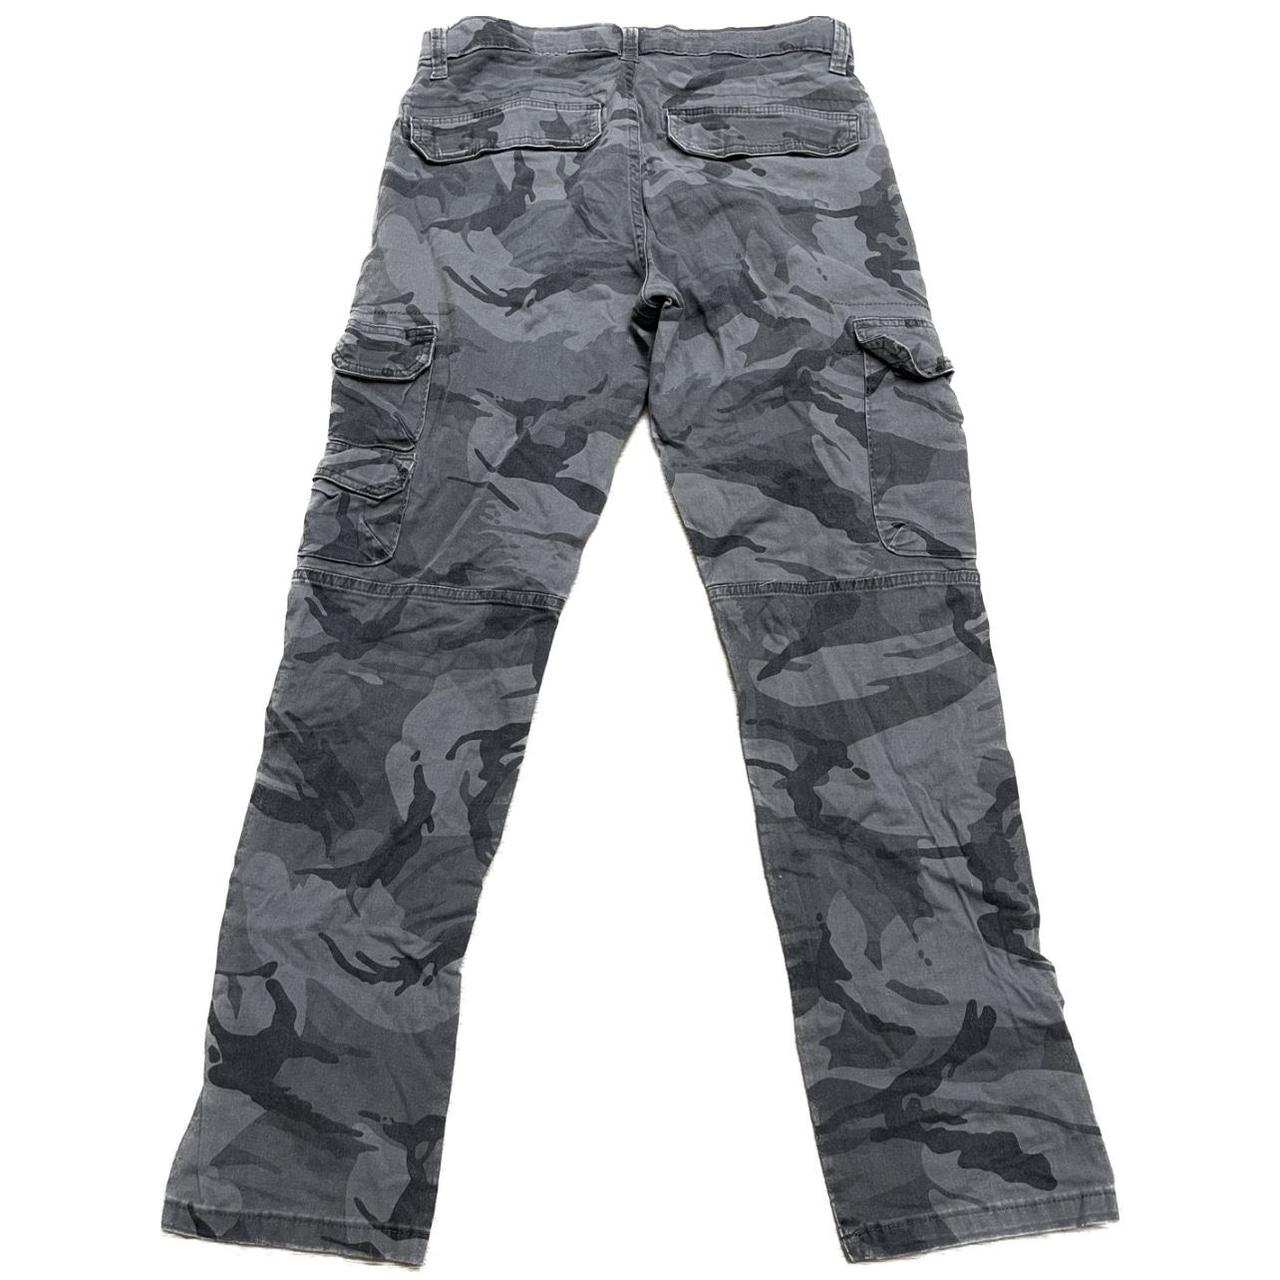 Wrangler Camo Cargo Pants Size - 29x30 Condition -... - Depop